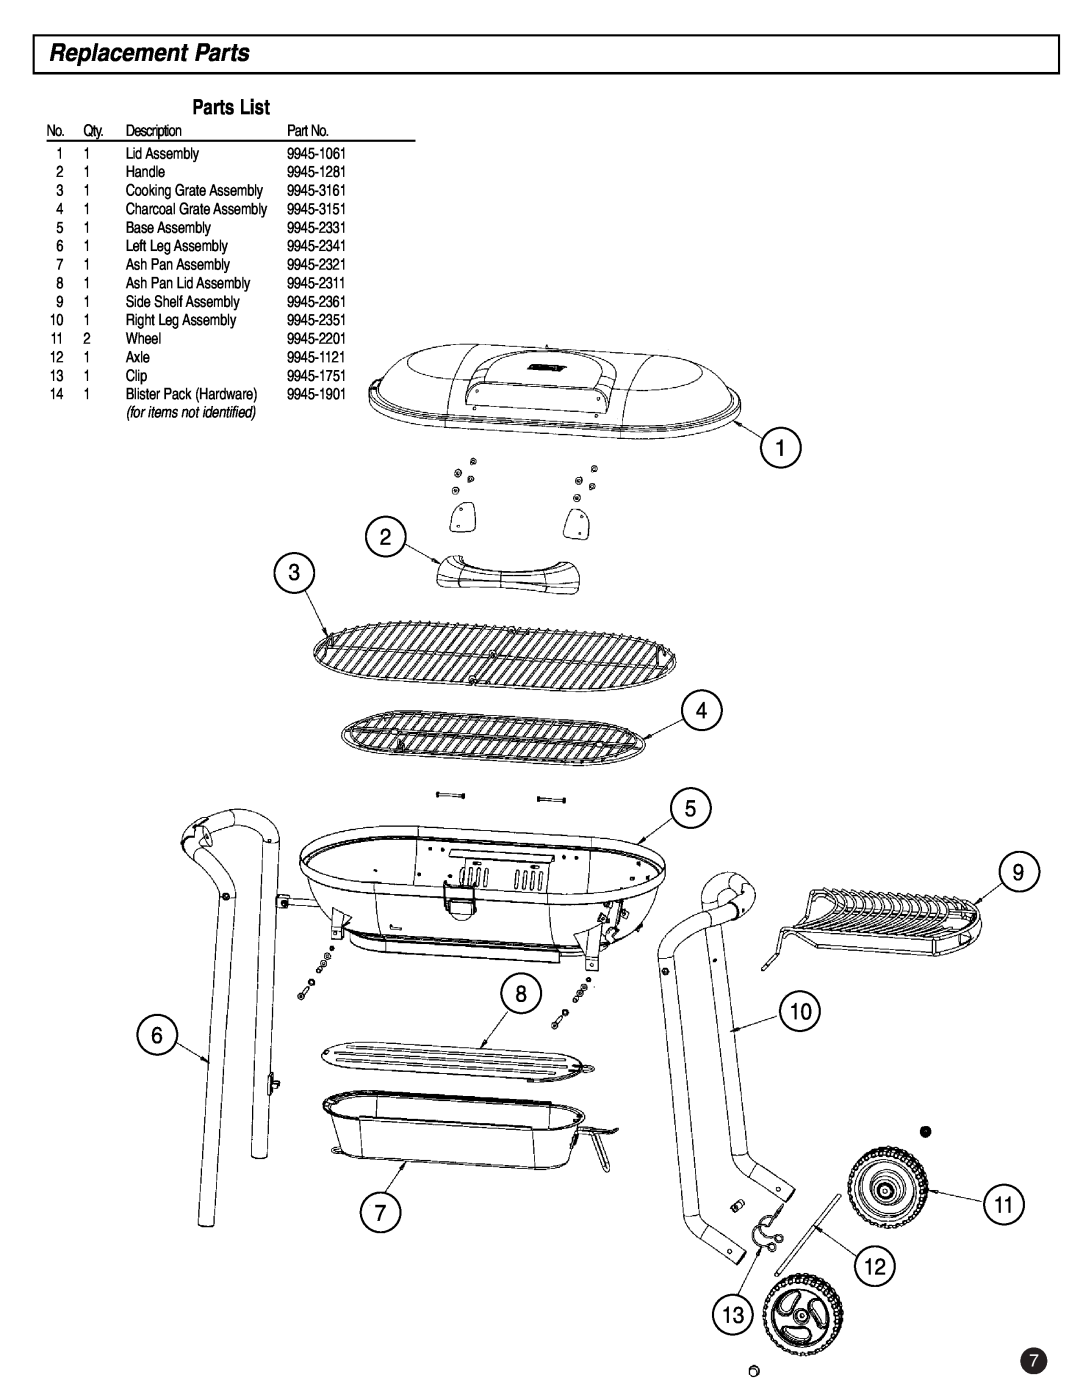 Coleman p9945-700 instruction manual Replacement Parts, Parts List 